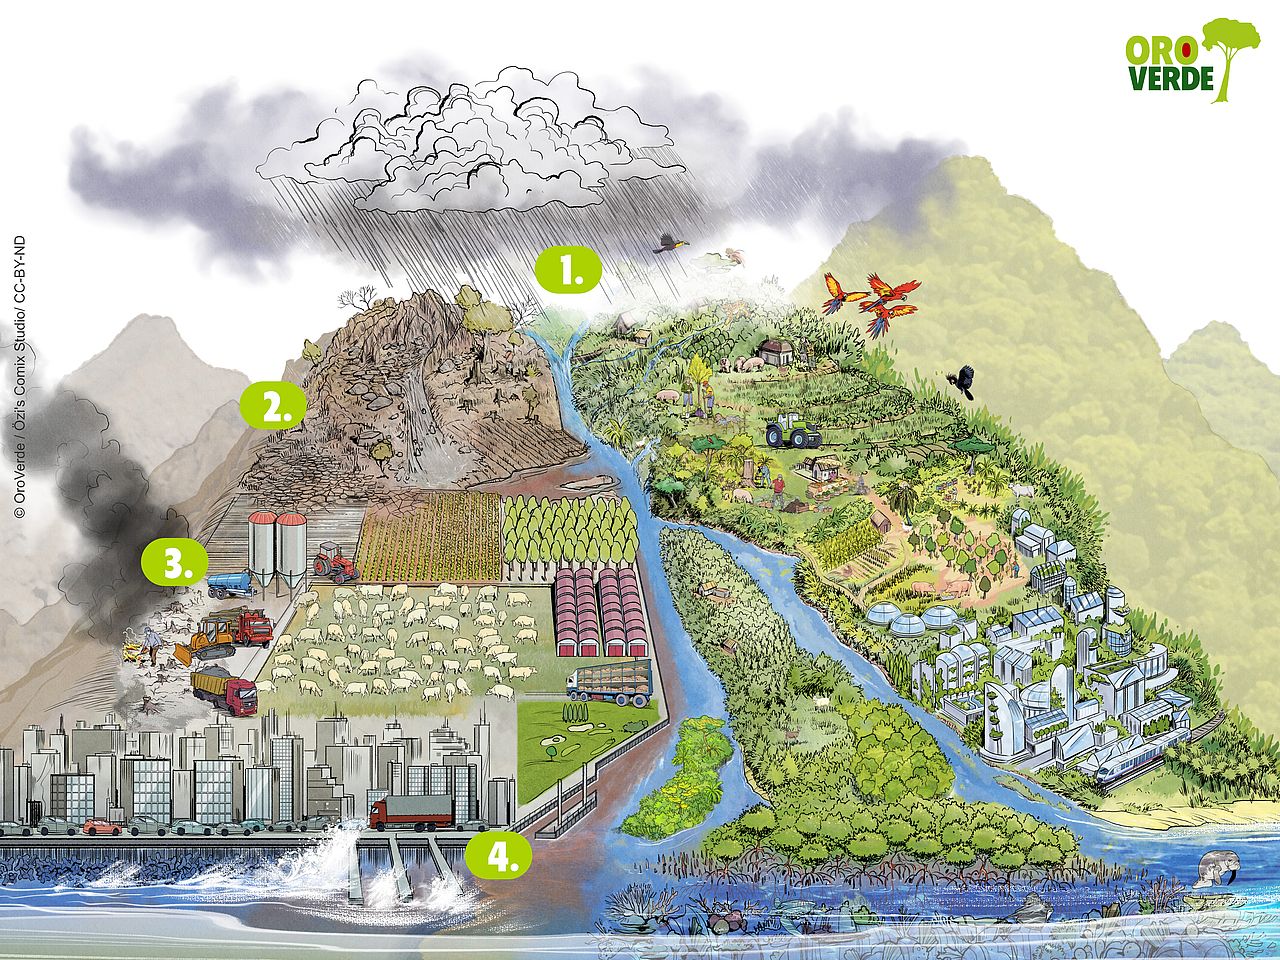 Ökosystembasierte Anpassung in einer ansprechenden Grafik und Illustration einfach erklärt. Die vielen kleinen Anpassungen an den Klimawandel führen zu einer lebenswerten Zukunftsvision, bei der die Leistungen der Ökosysteme erhalten werden.